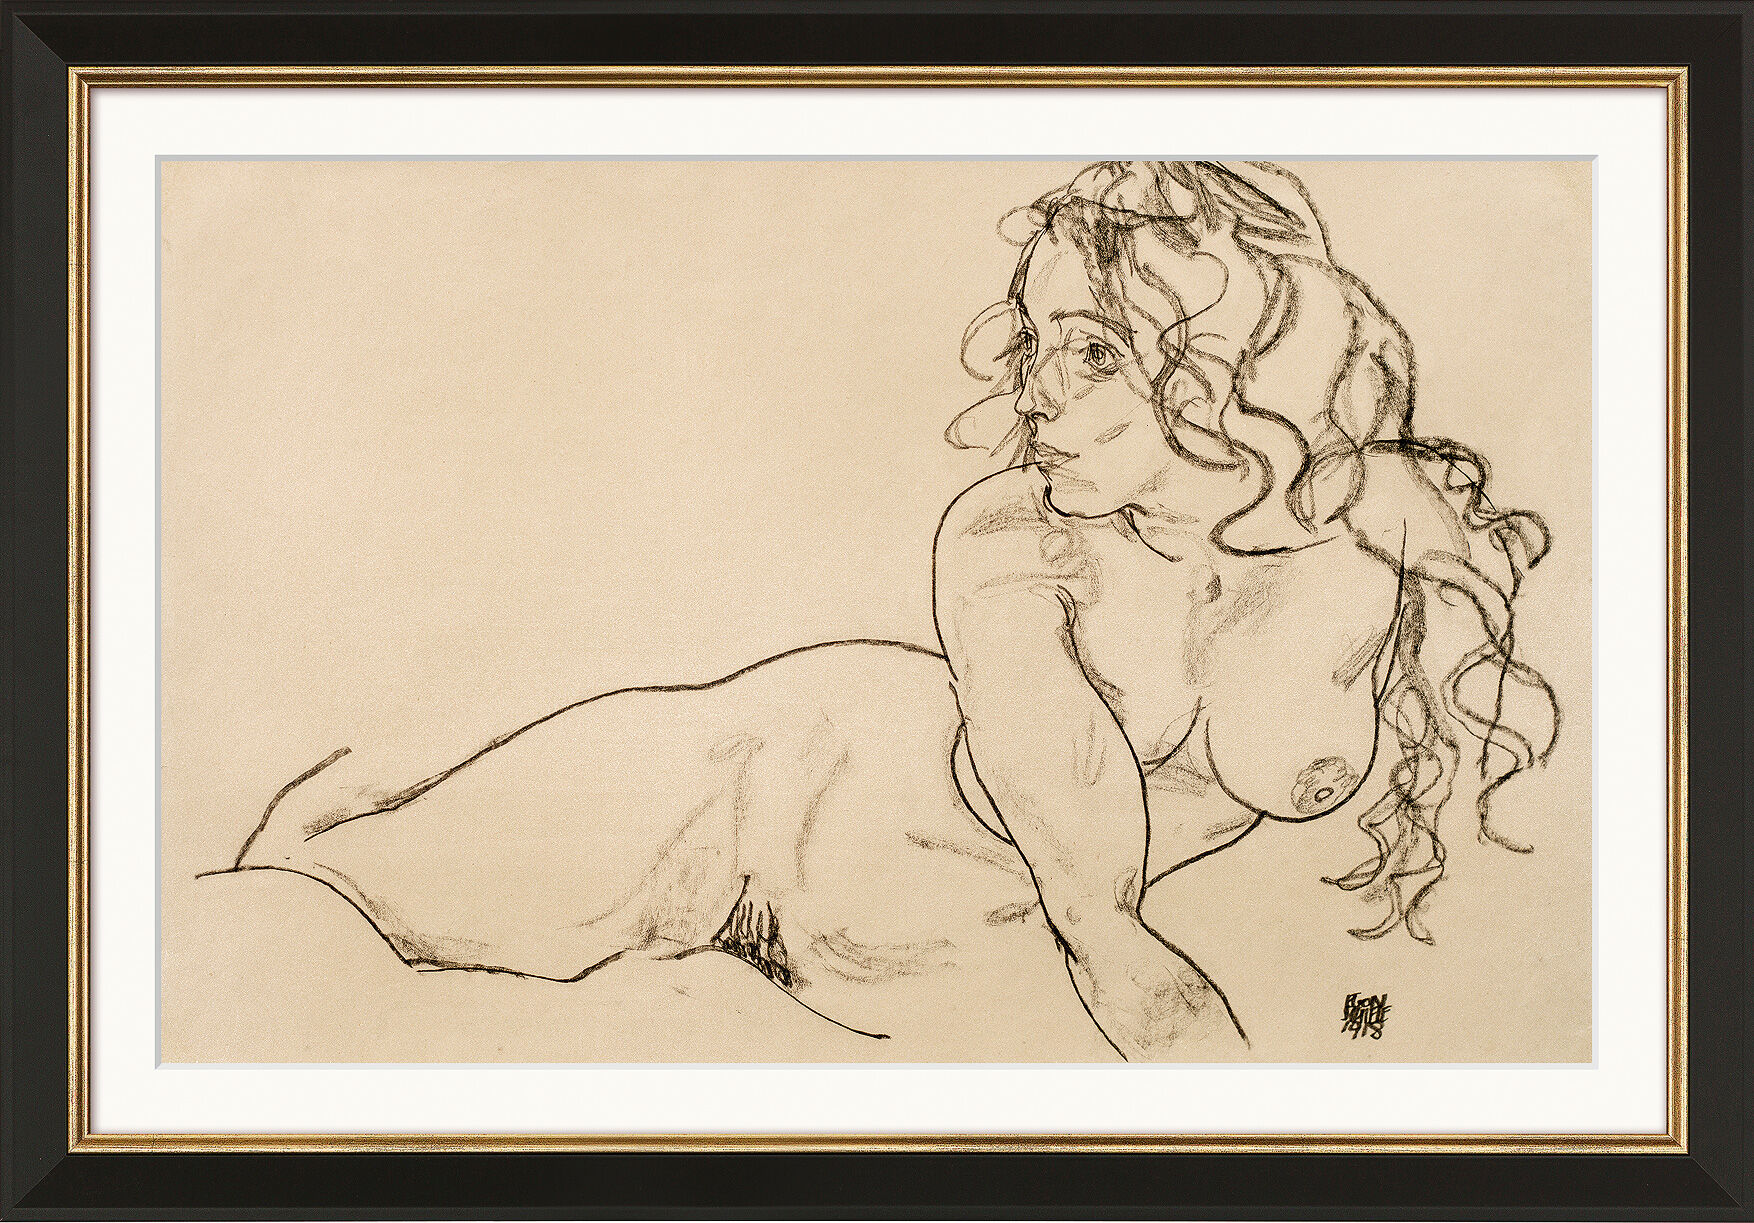 Tableau "Nu féminin reposant avec de longs cheveux" (1918), encadré von Egon Schiele